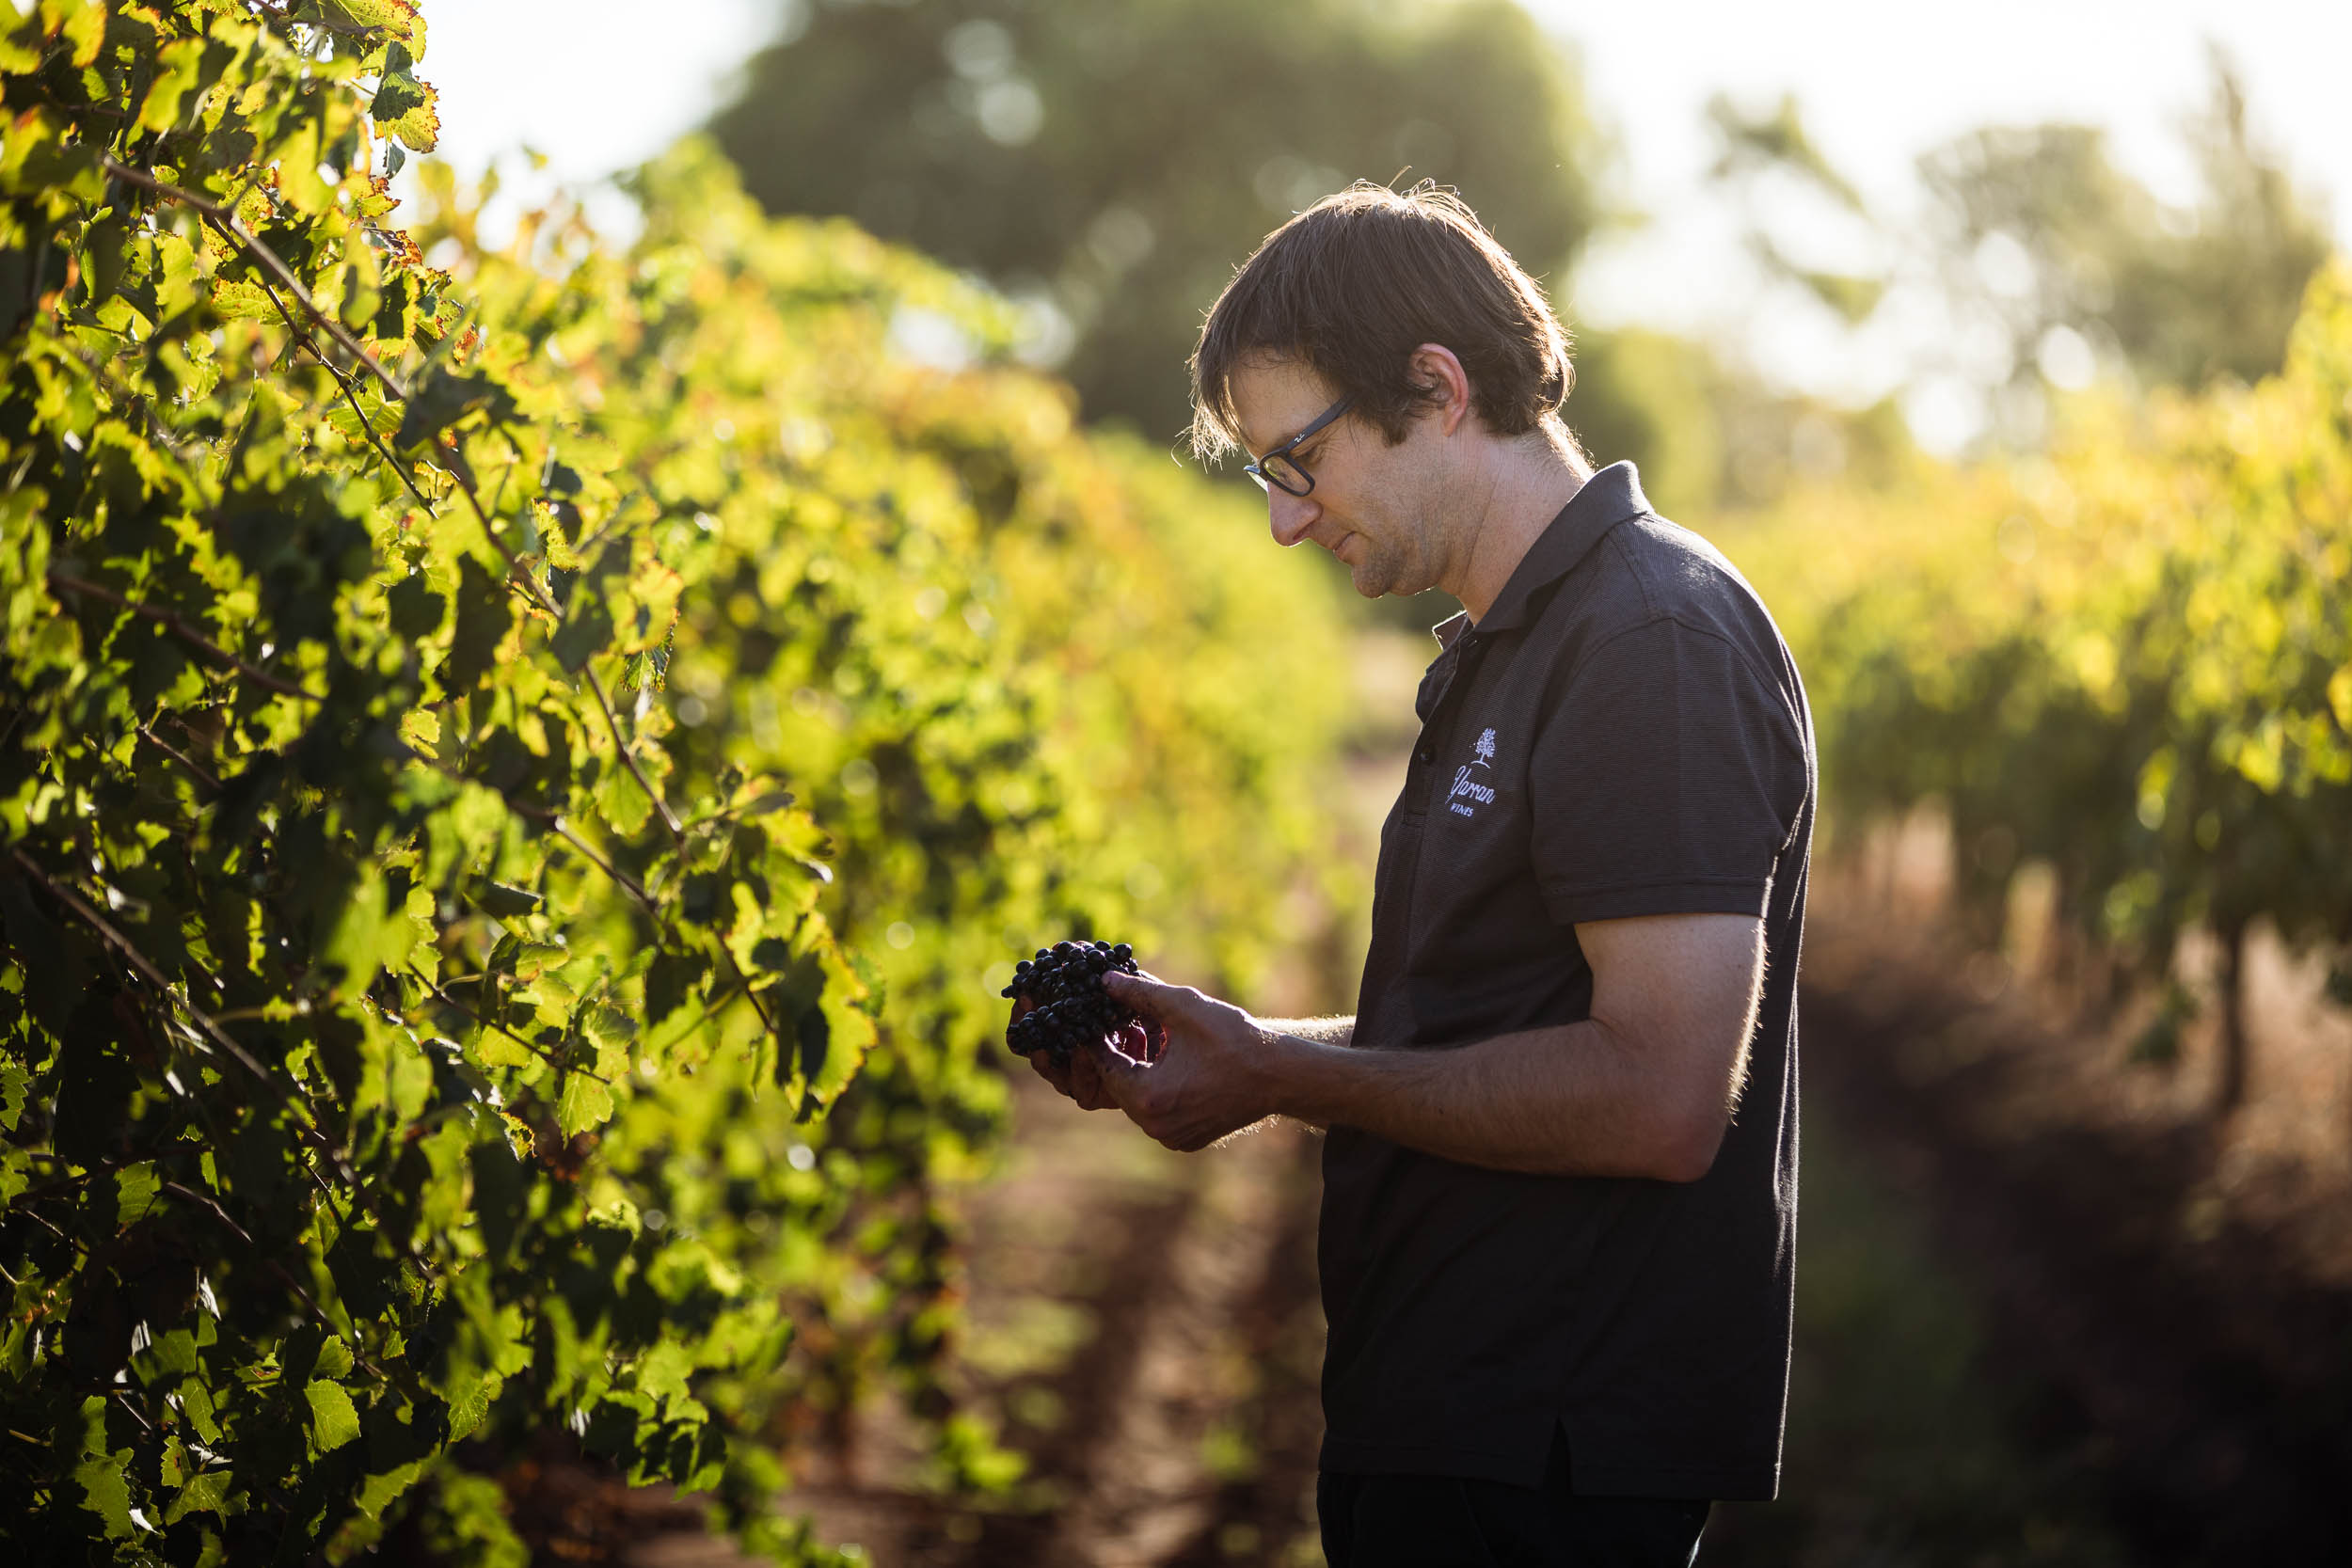 Man at vineyard inspecting grapes